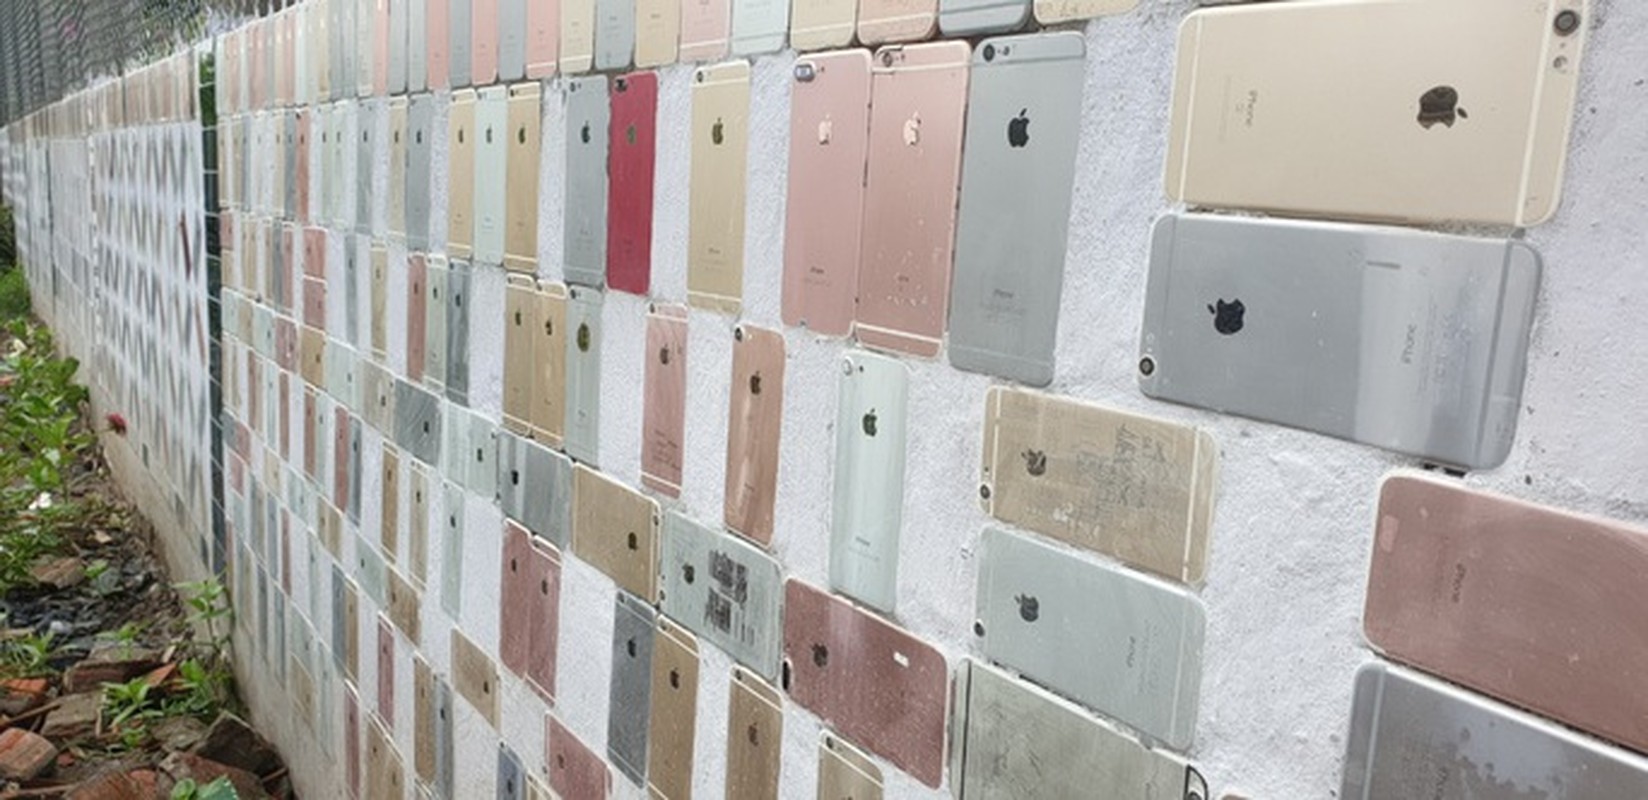 Ngôi nhà ốp 2.000 vỏ iPhone độc nhất vô nhị  - Ảnh 3.